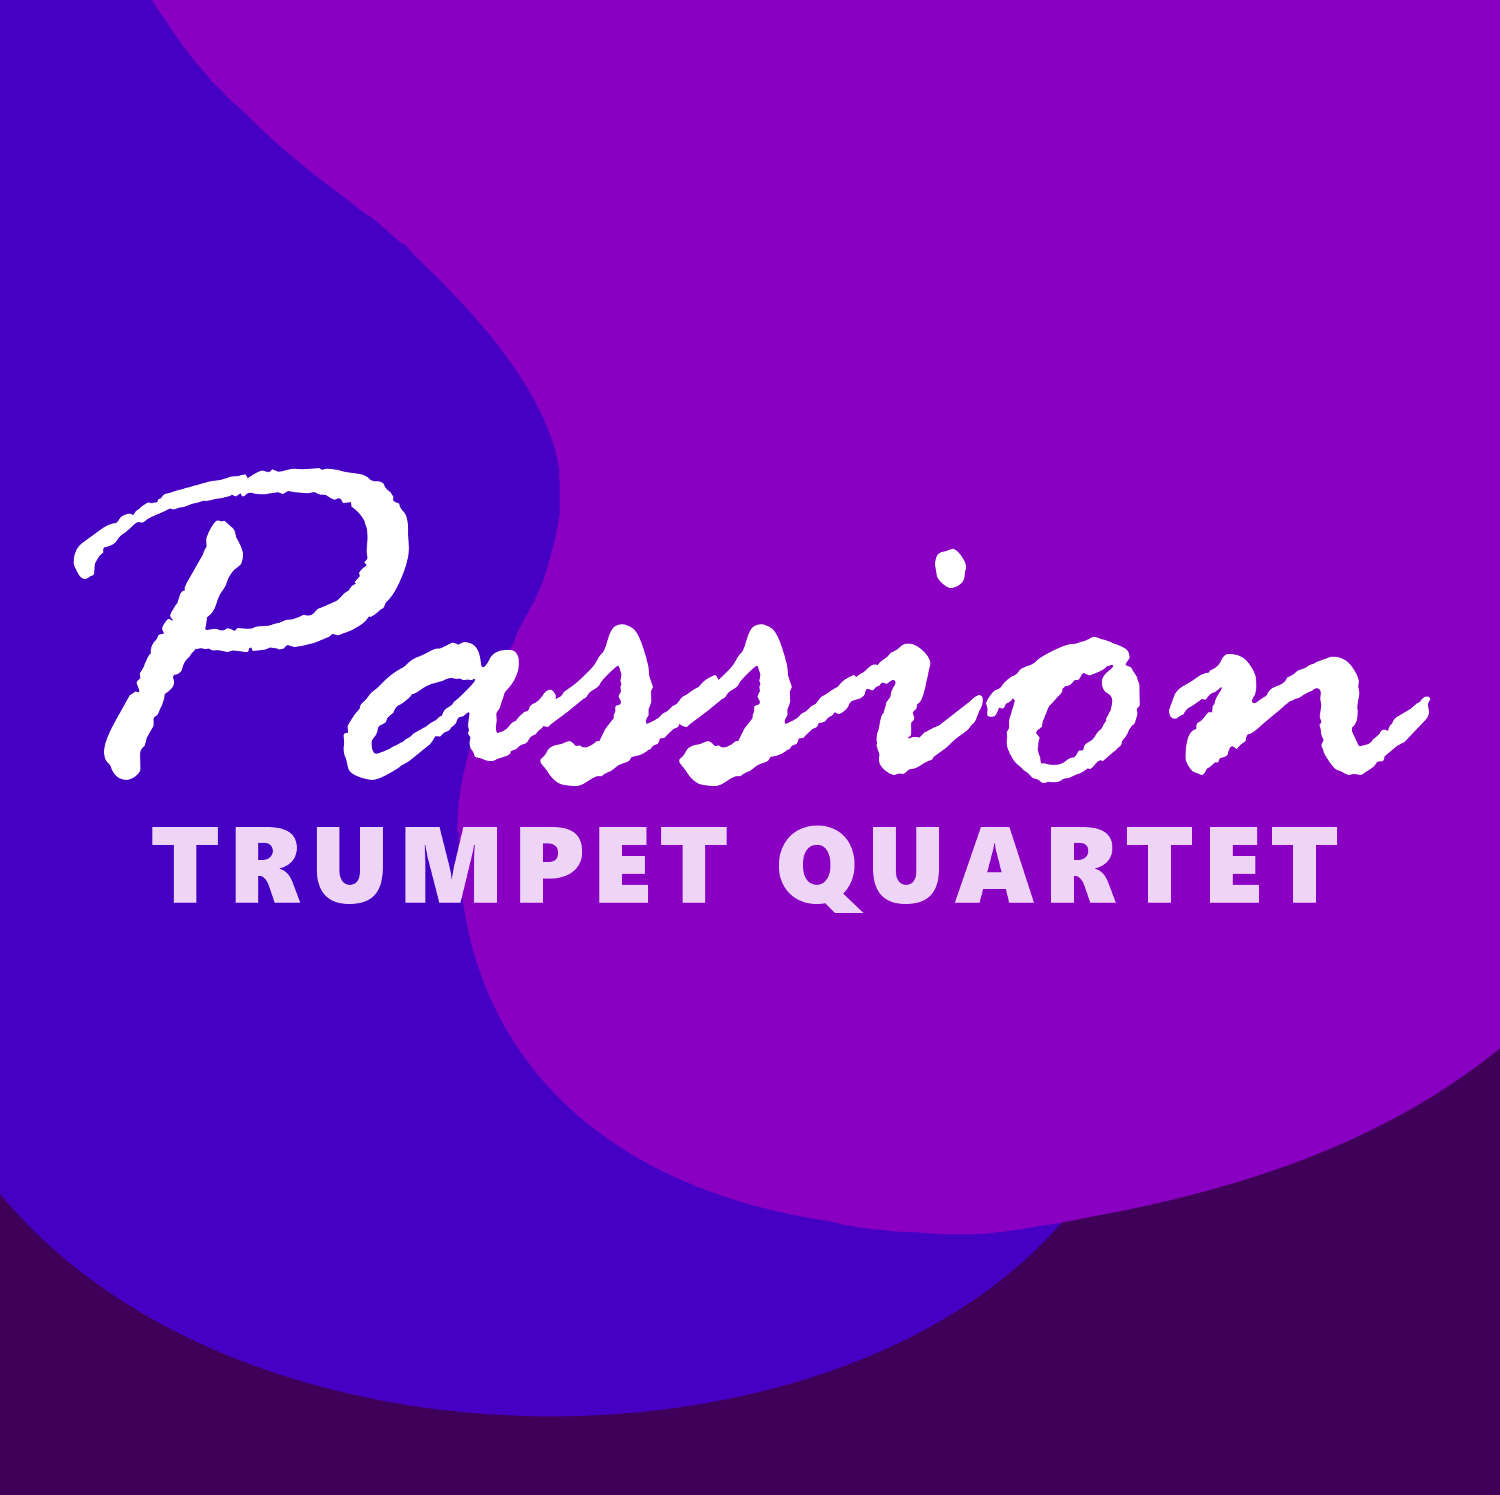 No Concession Blues for Trumpet Quartet